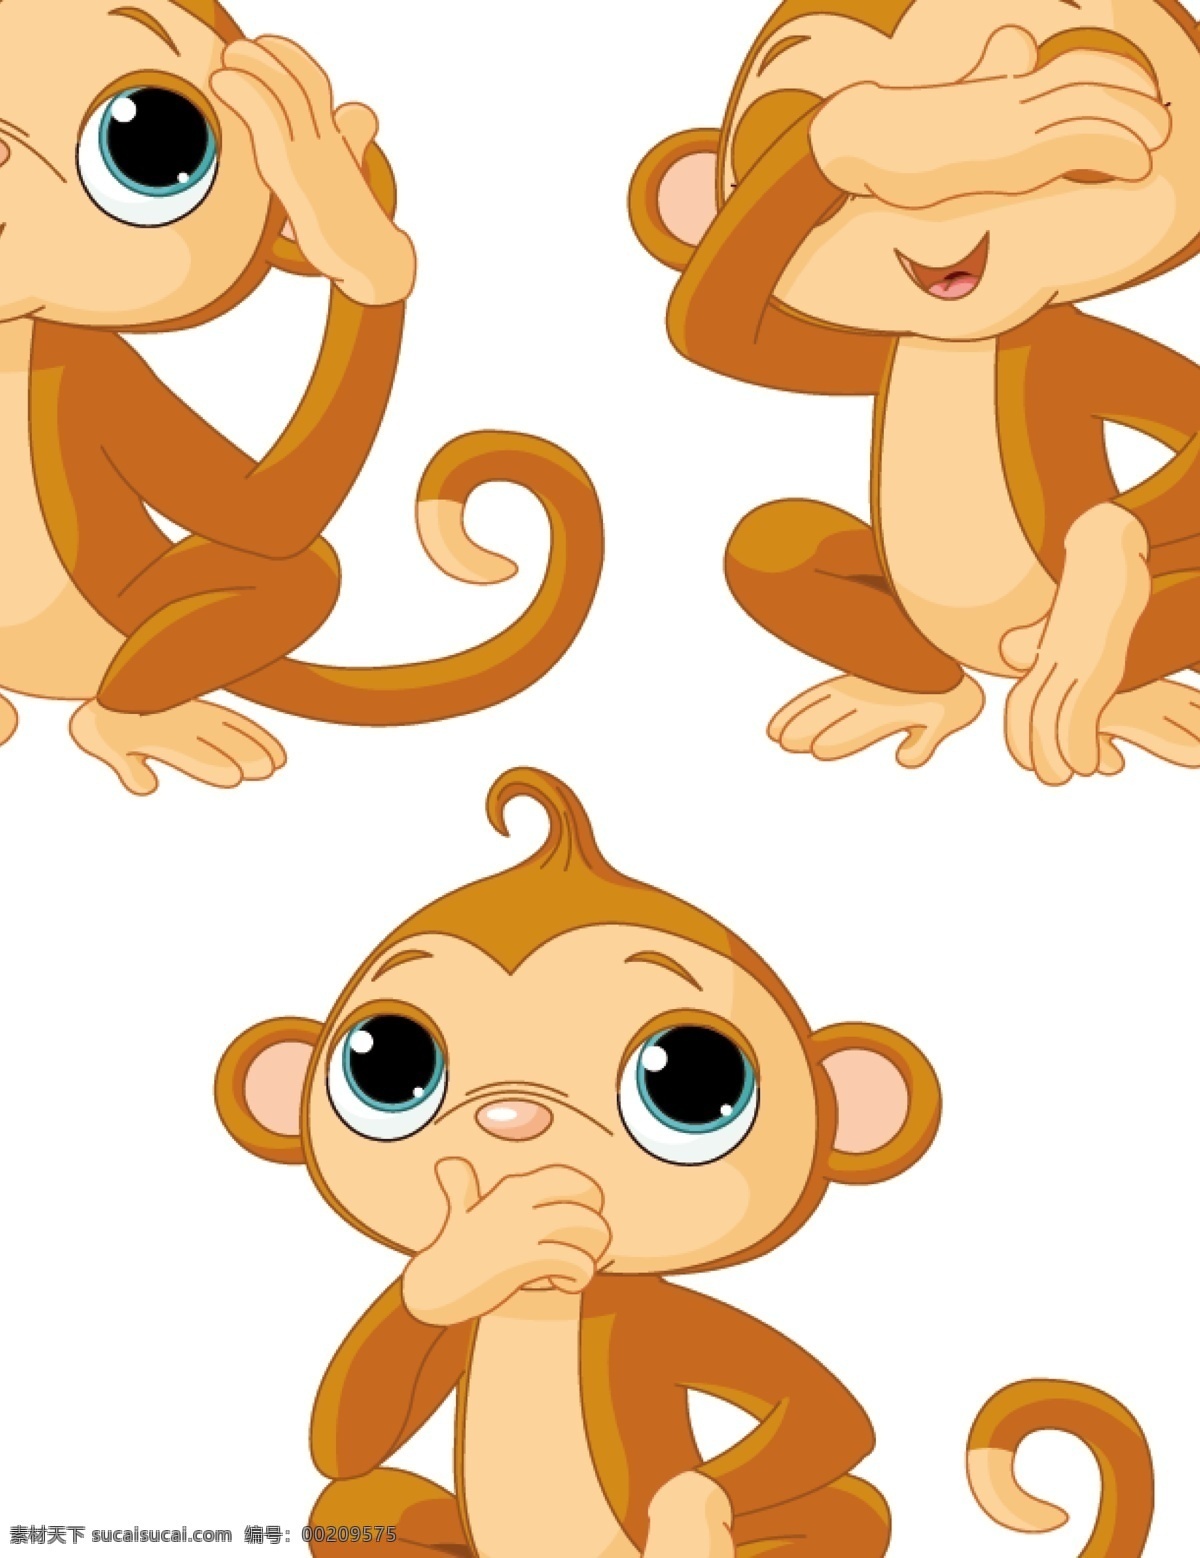 猴子位图 猴子 卡通 形象 矢量 逗 可爱 动物 卡通形象 矢量素材 ai格式 其他生物 生物世界